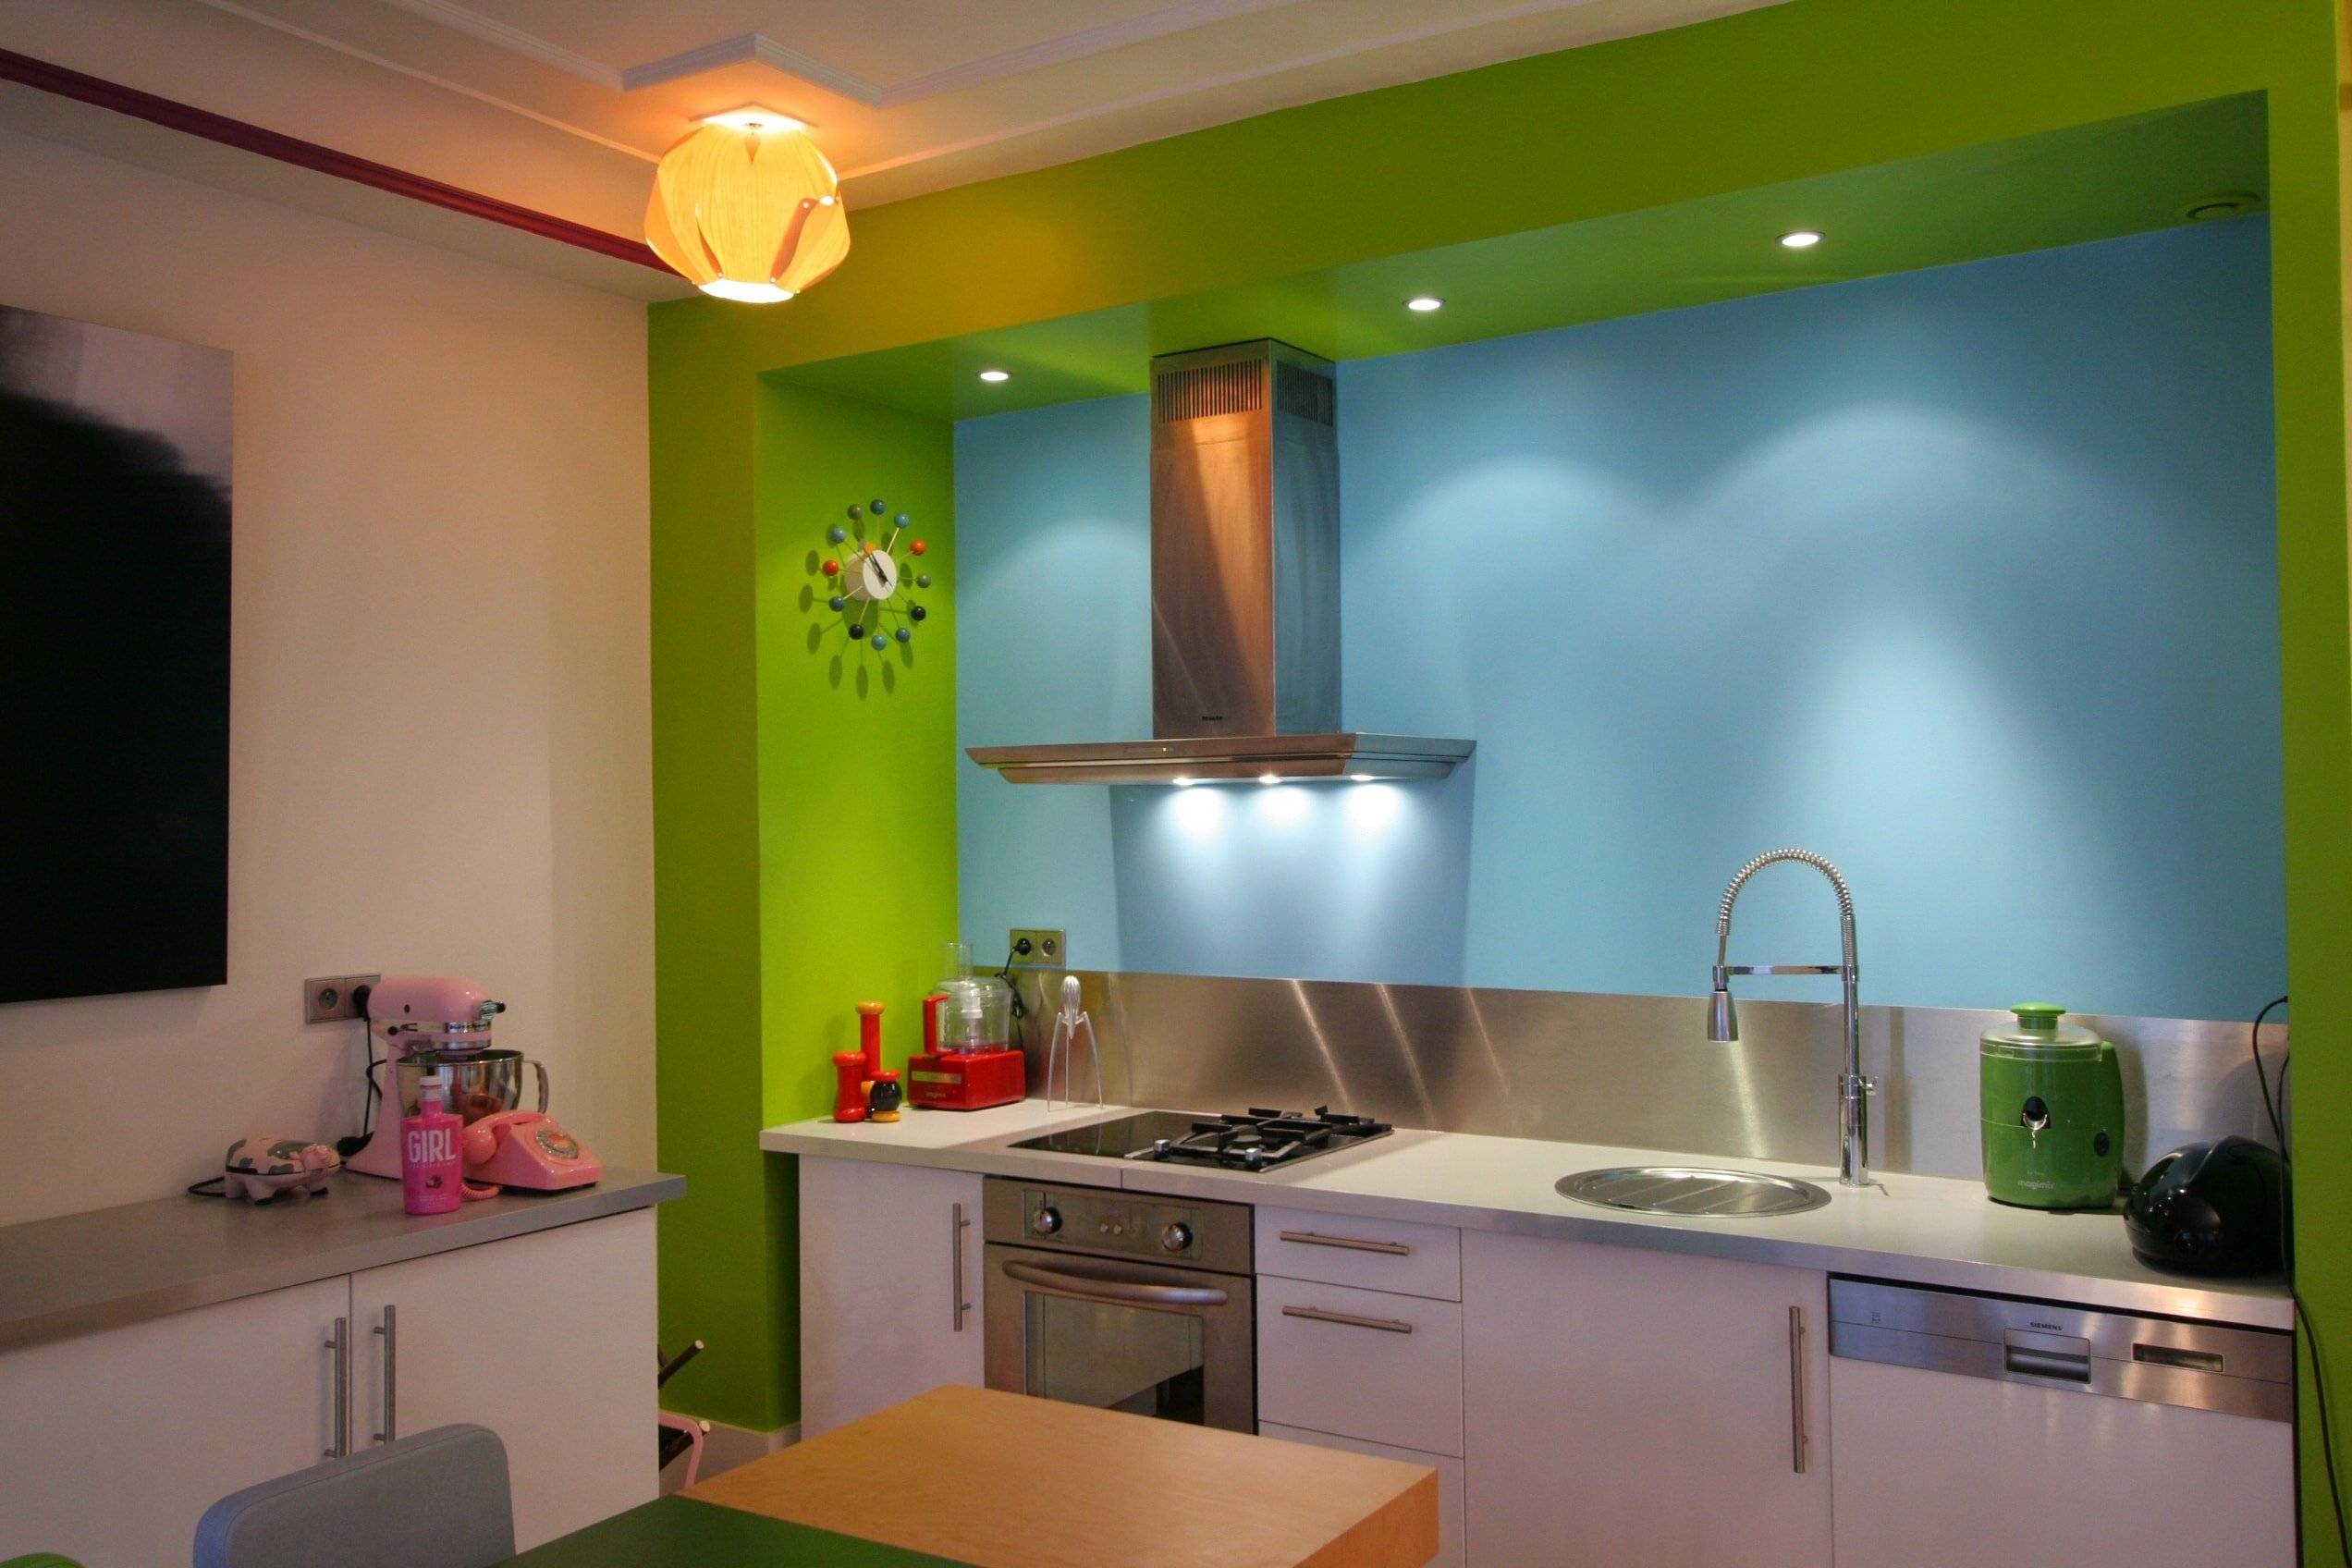 Покраска стен на кухне: пошаговое руководство и советы для начинающих (40 фото) | современные и модные кухни